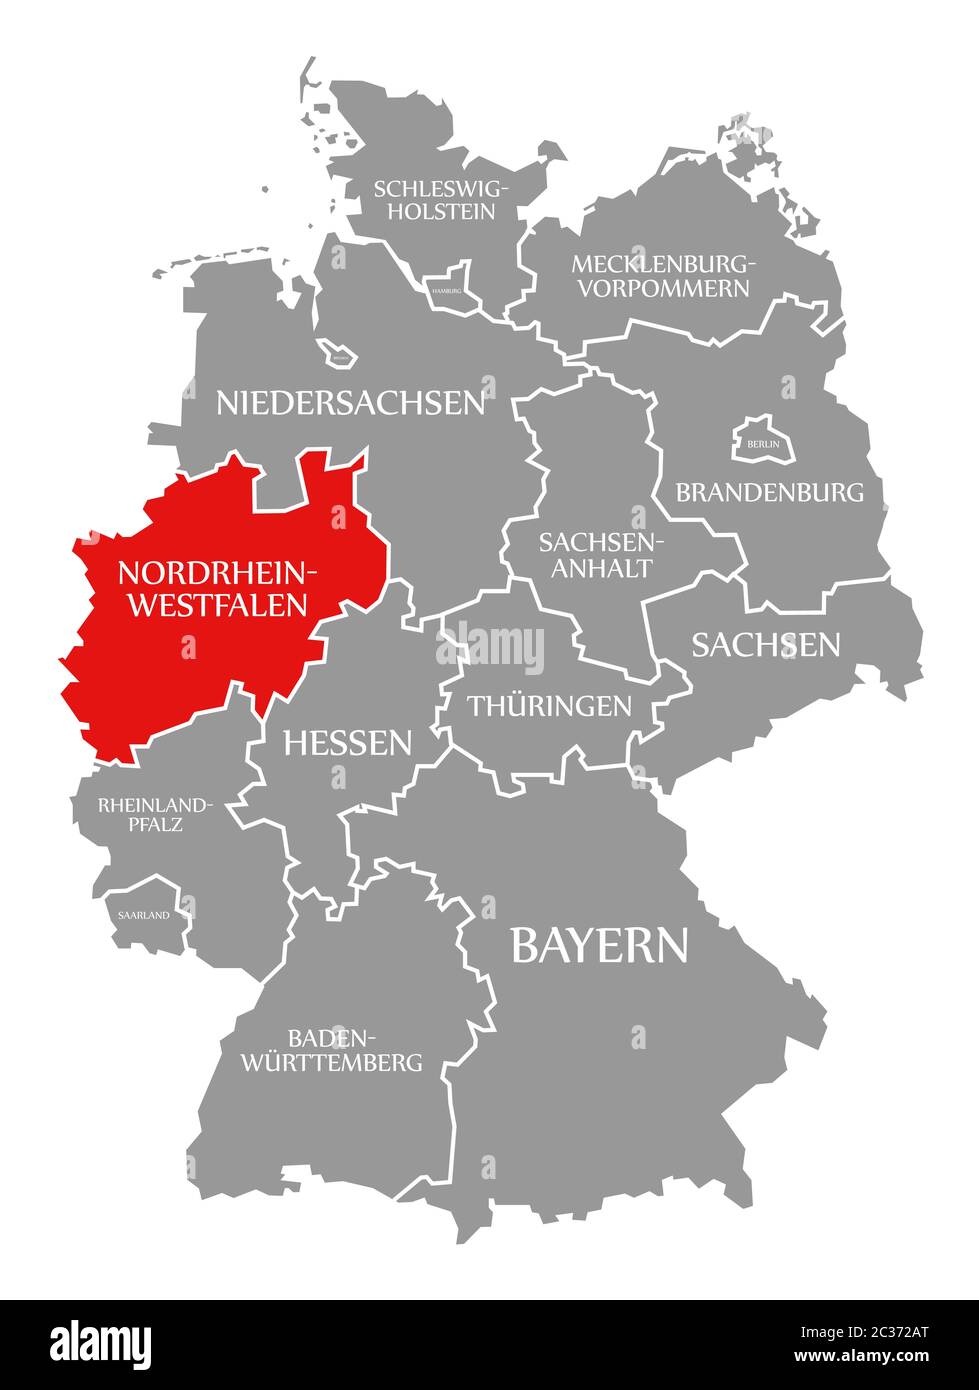 Renania del Norte Westfalia resaltada en rojo en el mapa de Alemania Foto de stock